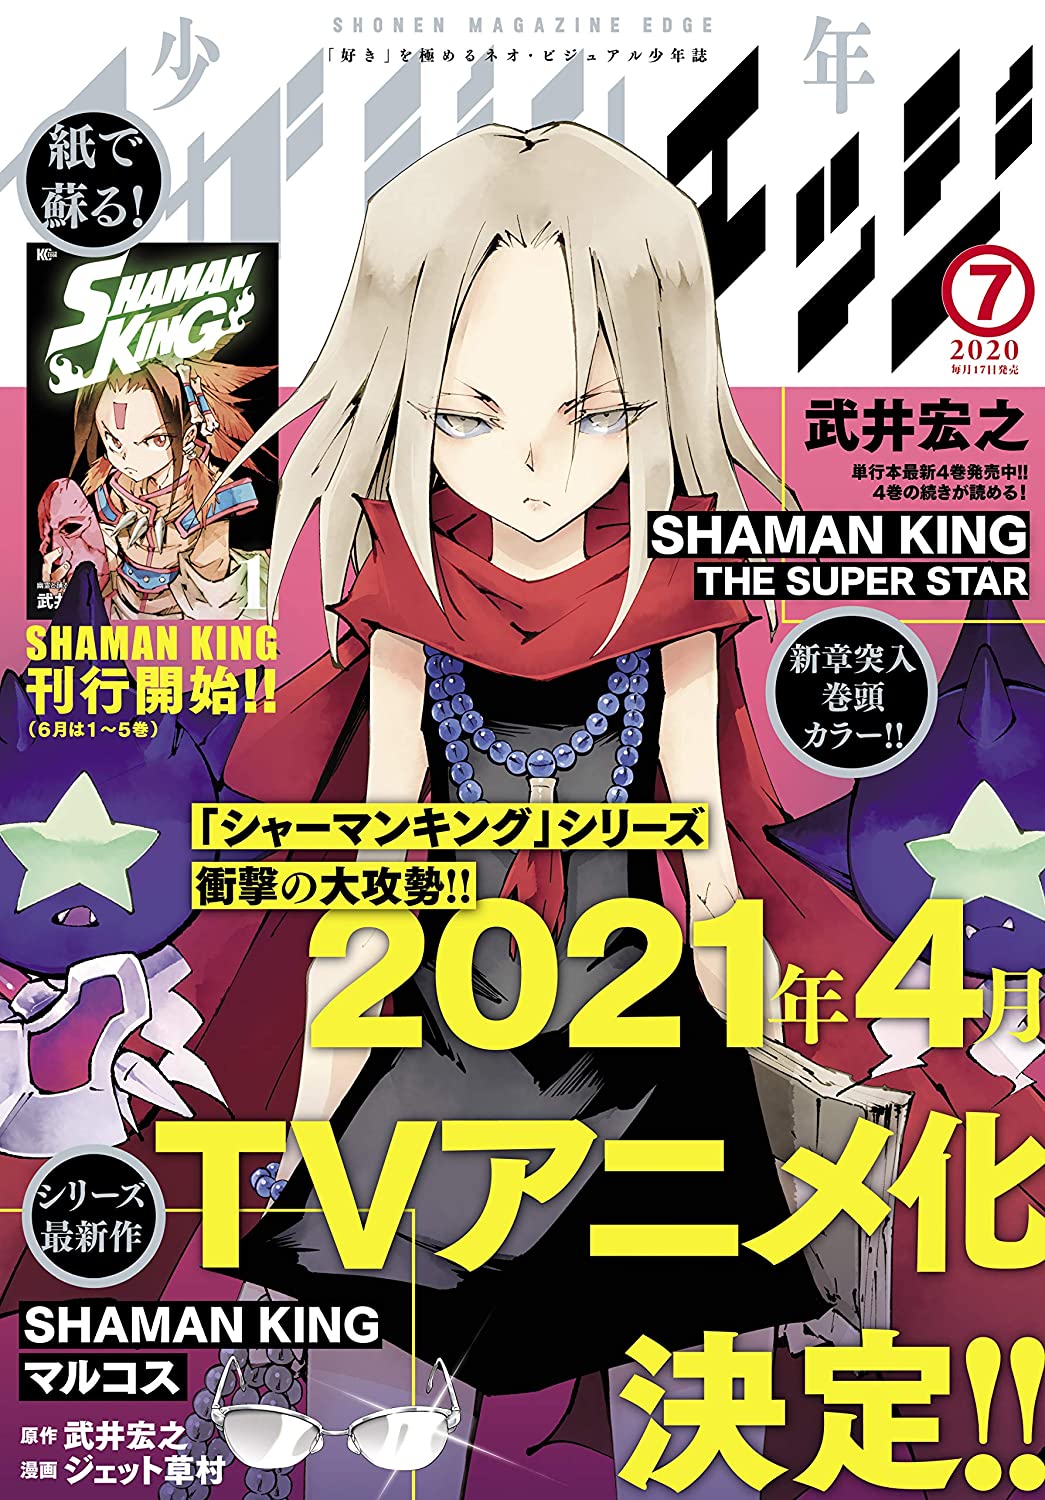 Shonen Magazine Edge 7 Cover Shaman King The Super Star T Co Zkjbitxqat Twitter